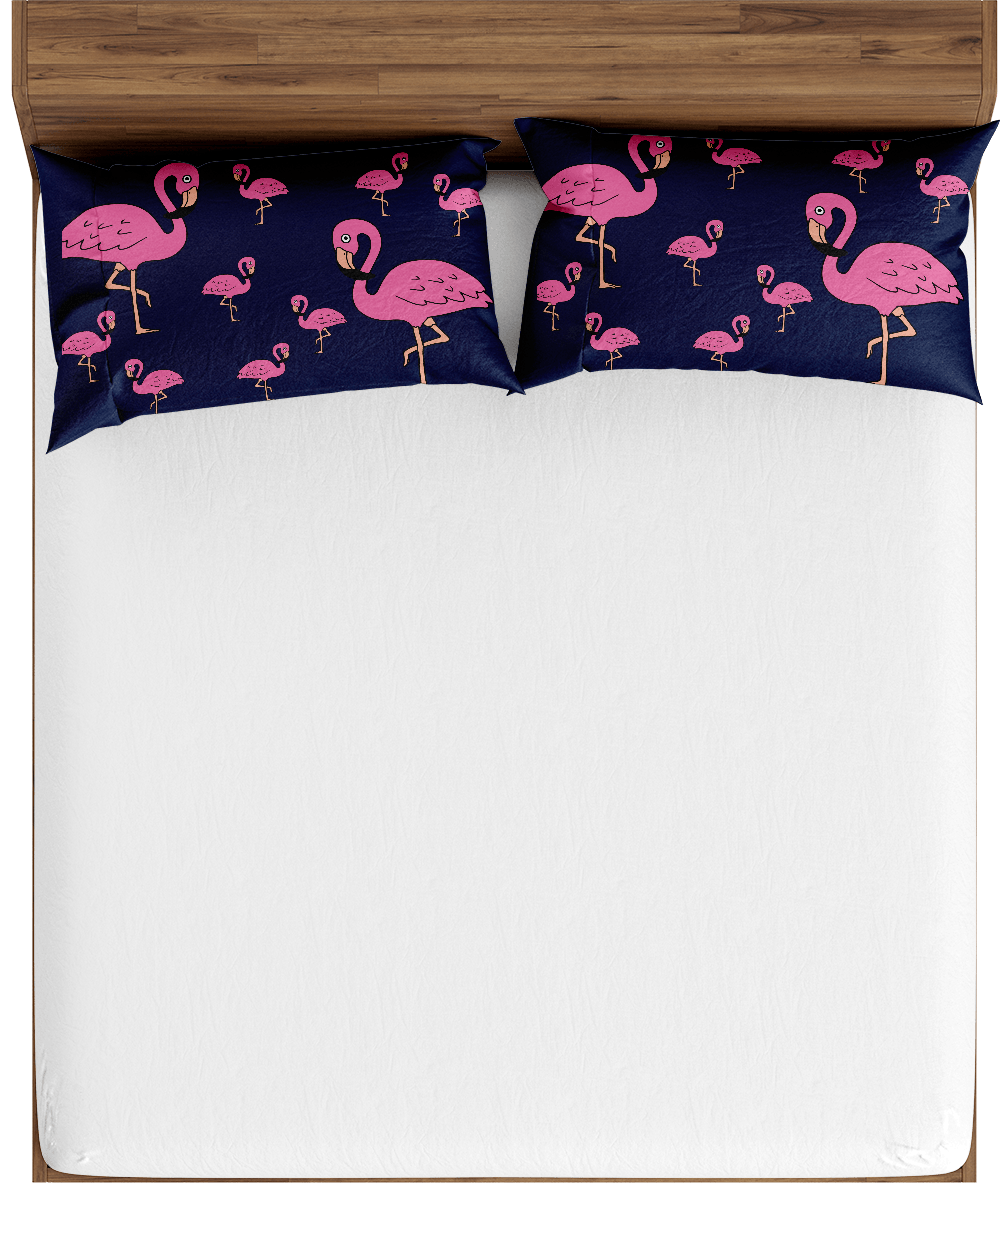 Flamingo Bed Pillows - fungear.com.au